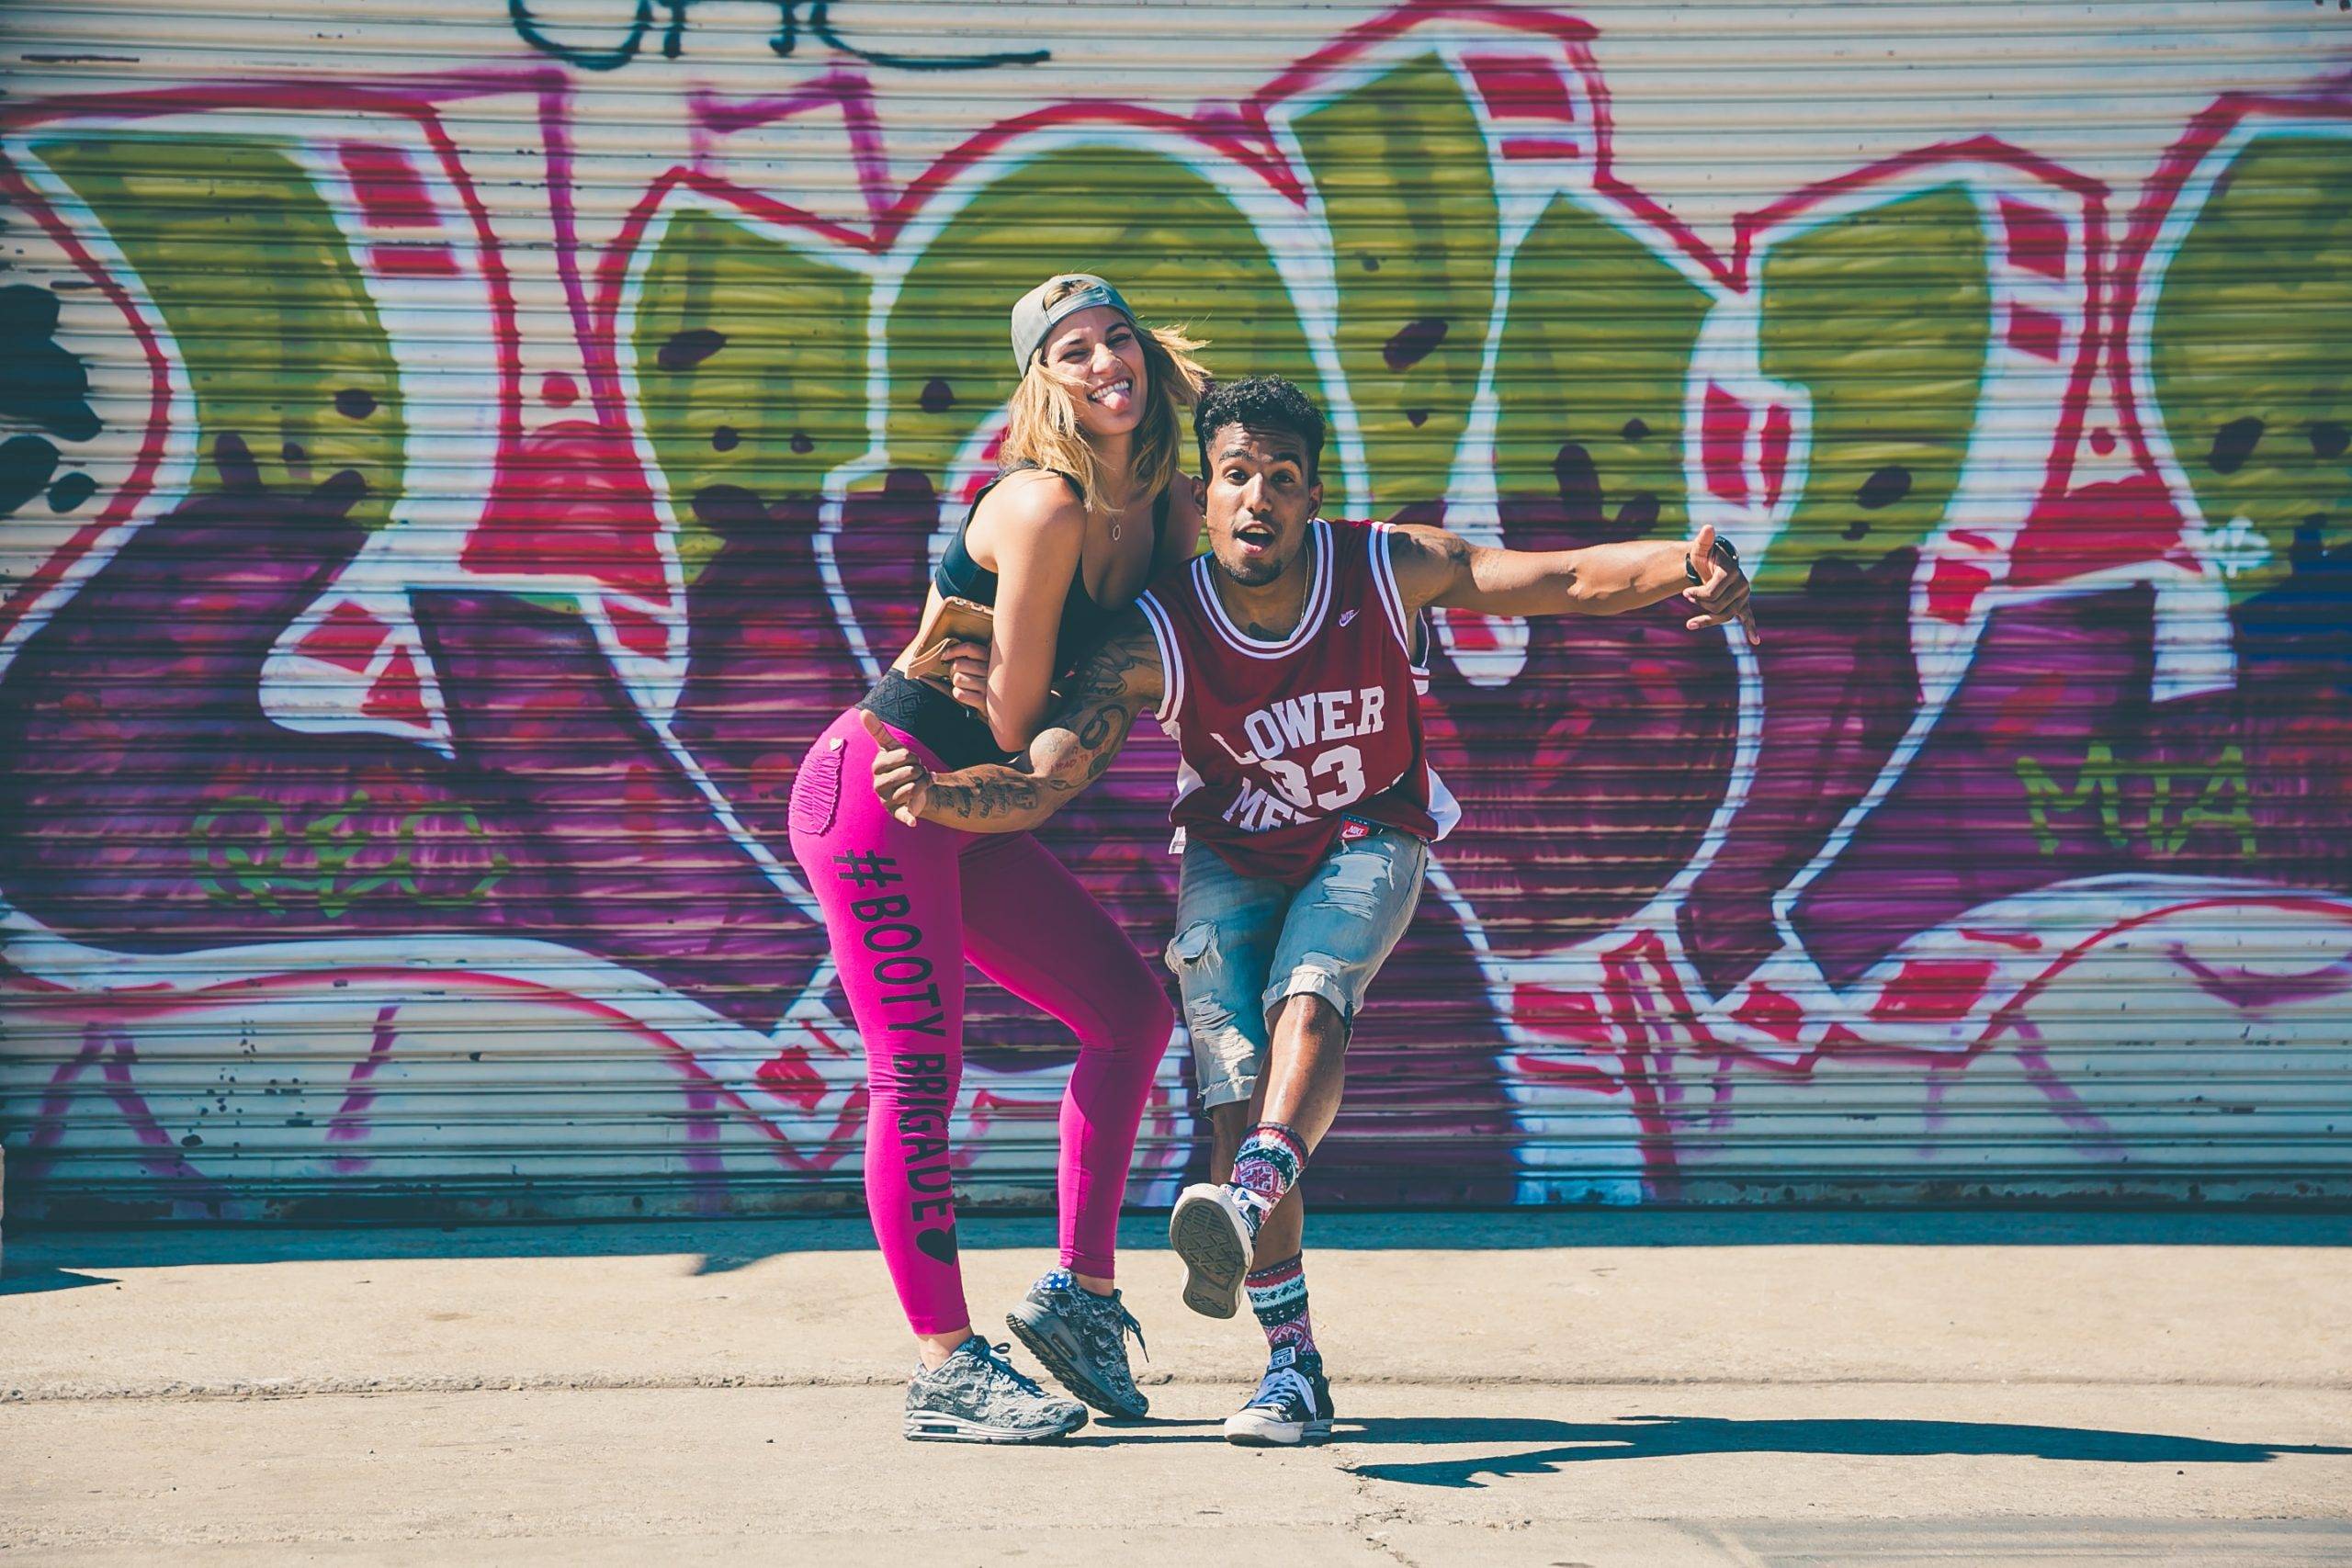 Ung kvinna och man står framför en graffitivägg utomhus med färgglada kläder och i danssteg. Båda tittar in mot kameran med glad uppsyn. Kvinnan har rosa tights. sporttopp och kejp. Mannen har jeansshorts och baskettröja